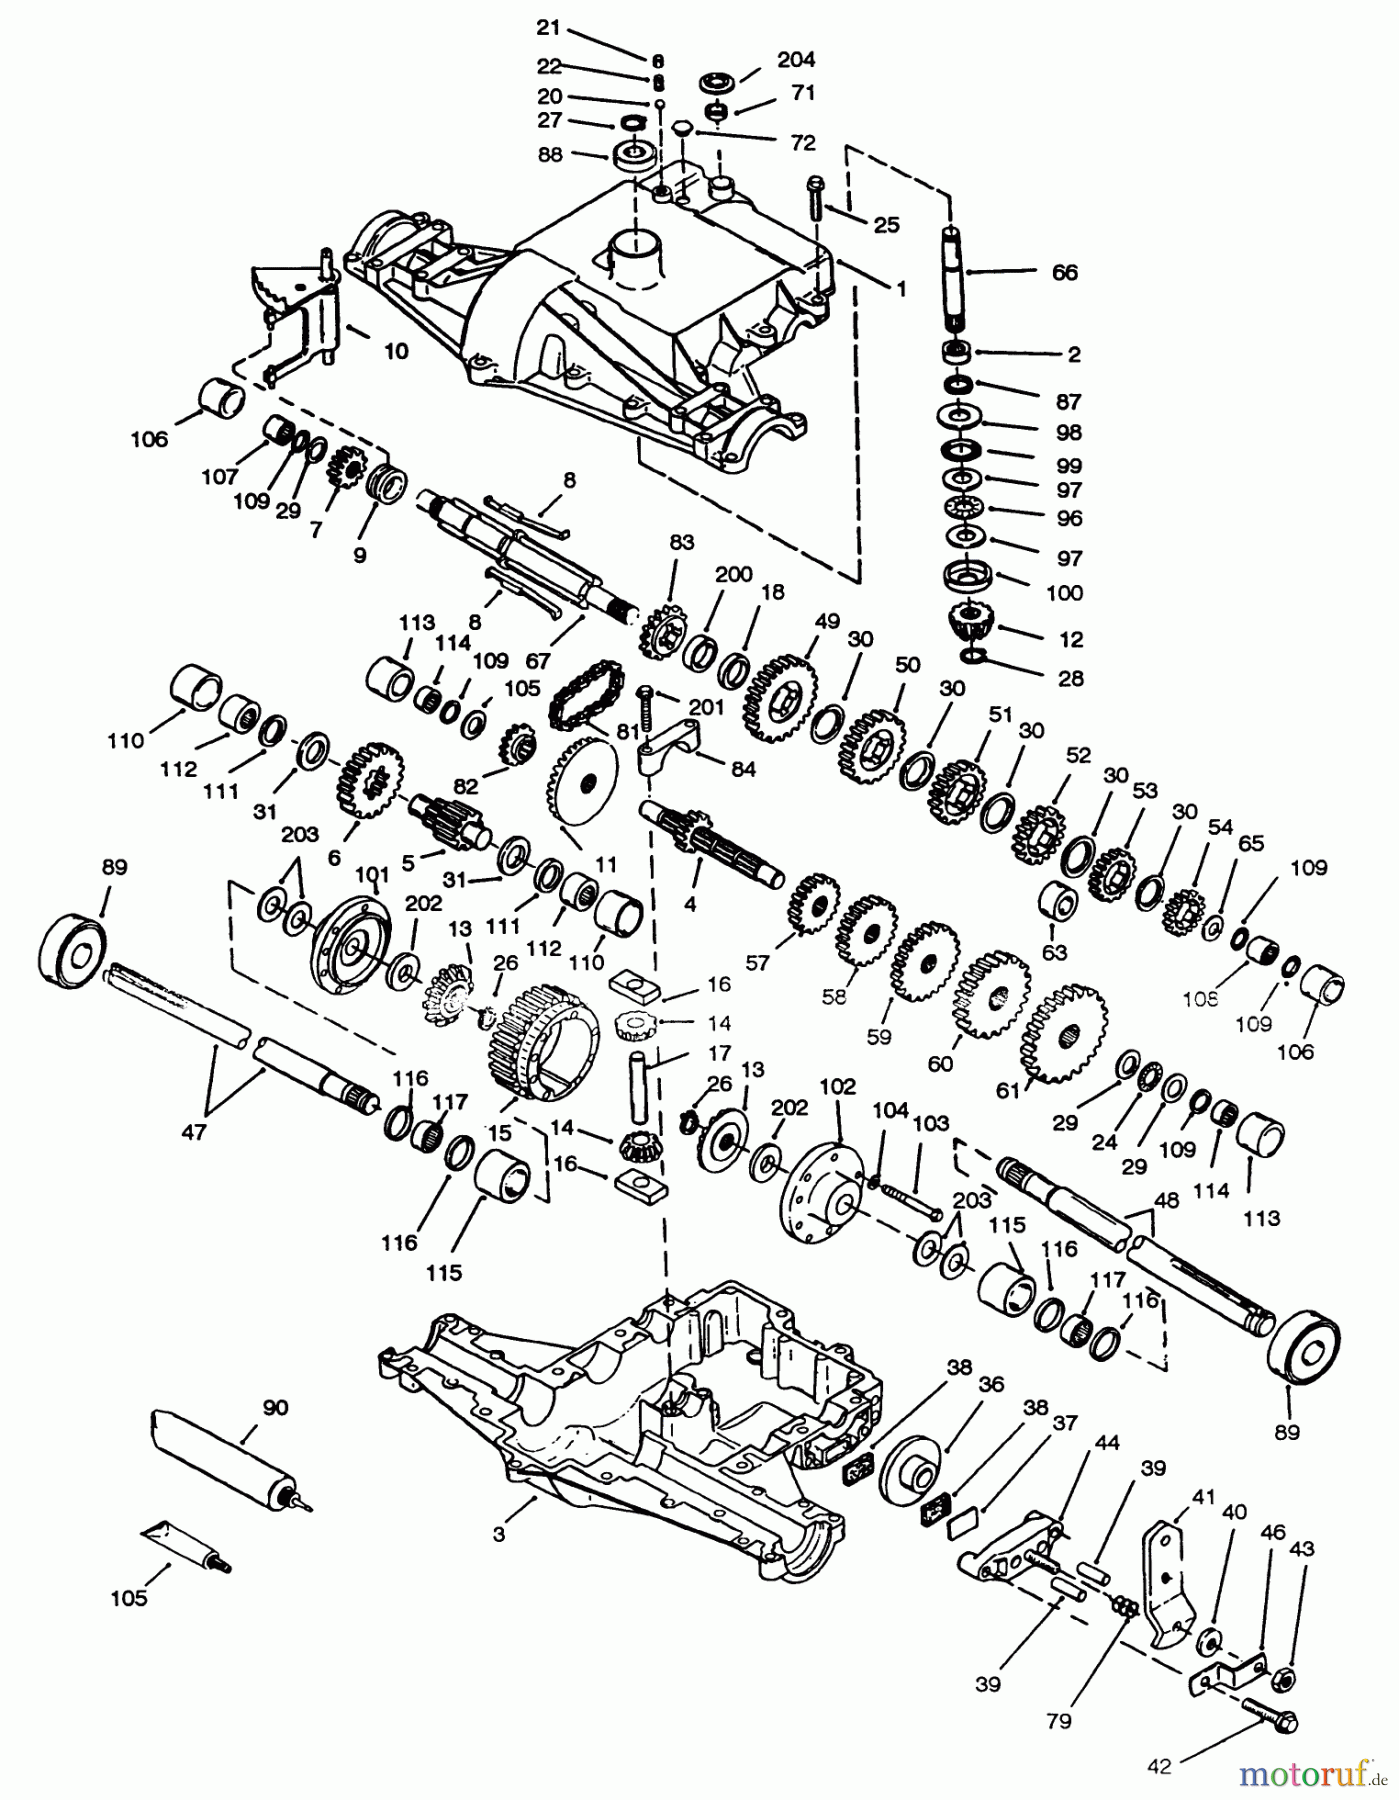  Toro Neu Mowers, Lawn & Garden Tractor Seite 1 72063 (264-H) - Toro 264-H Yard Tractor, 1994 (4900001-4999999) PEERLESS TRANSAXLE 820-024